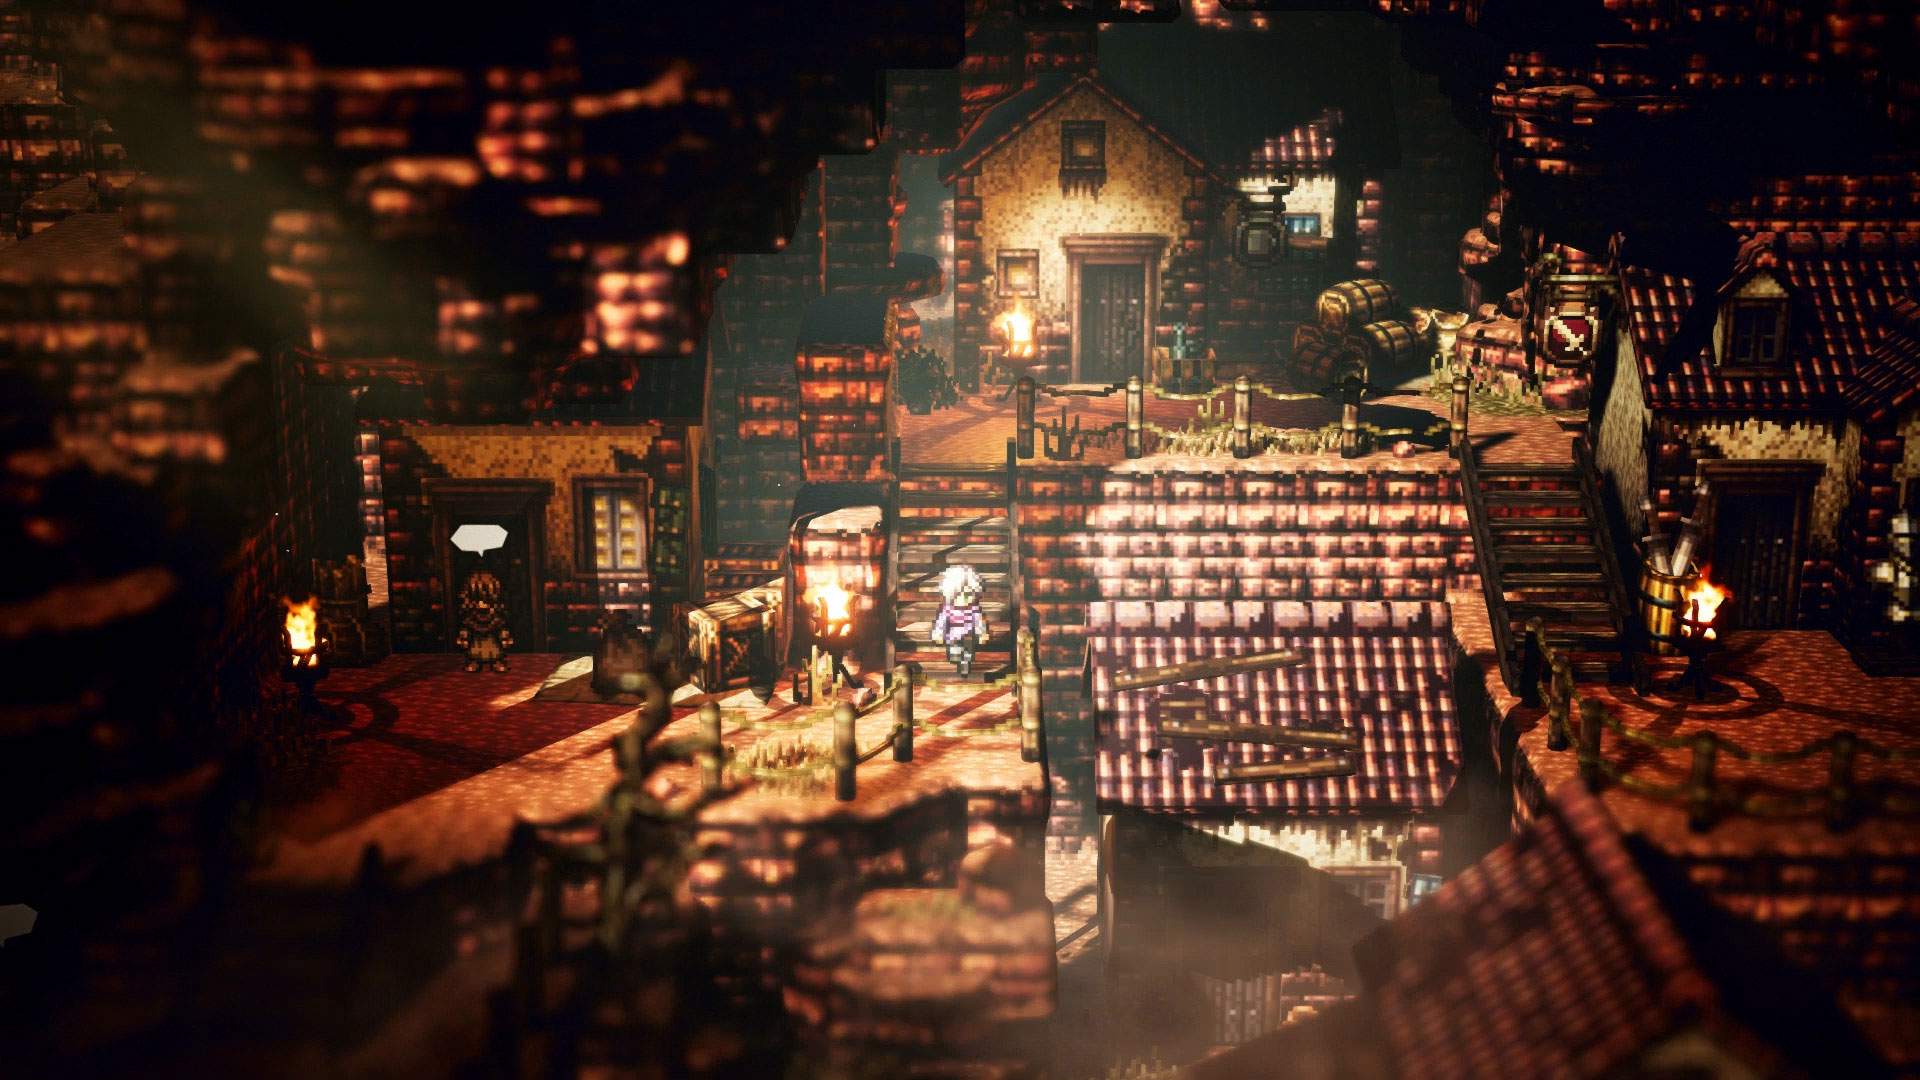 Captura de pantalla del juego que muestra a Therion bajando unas escaleras en medio de una ciudad de estilo medieval al anochecer.